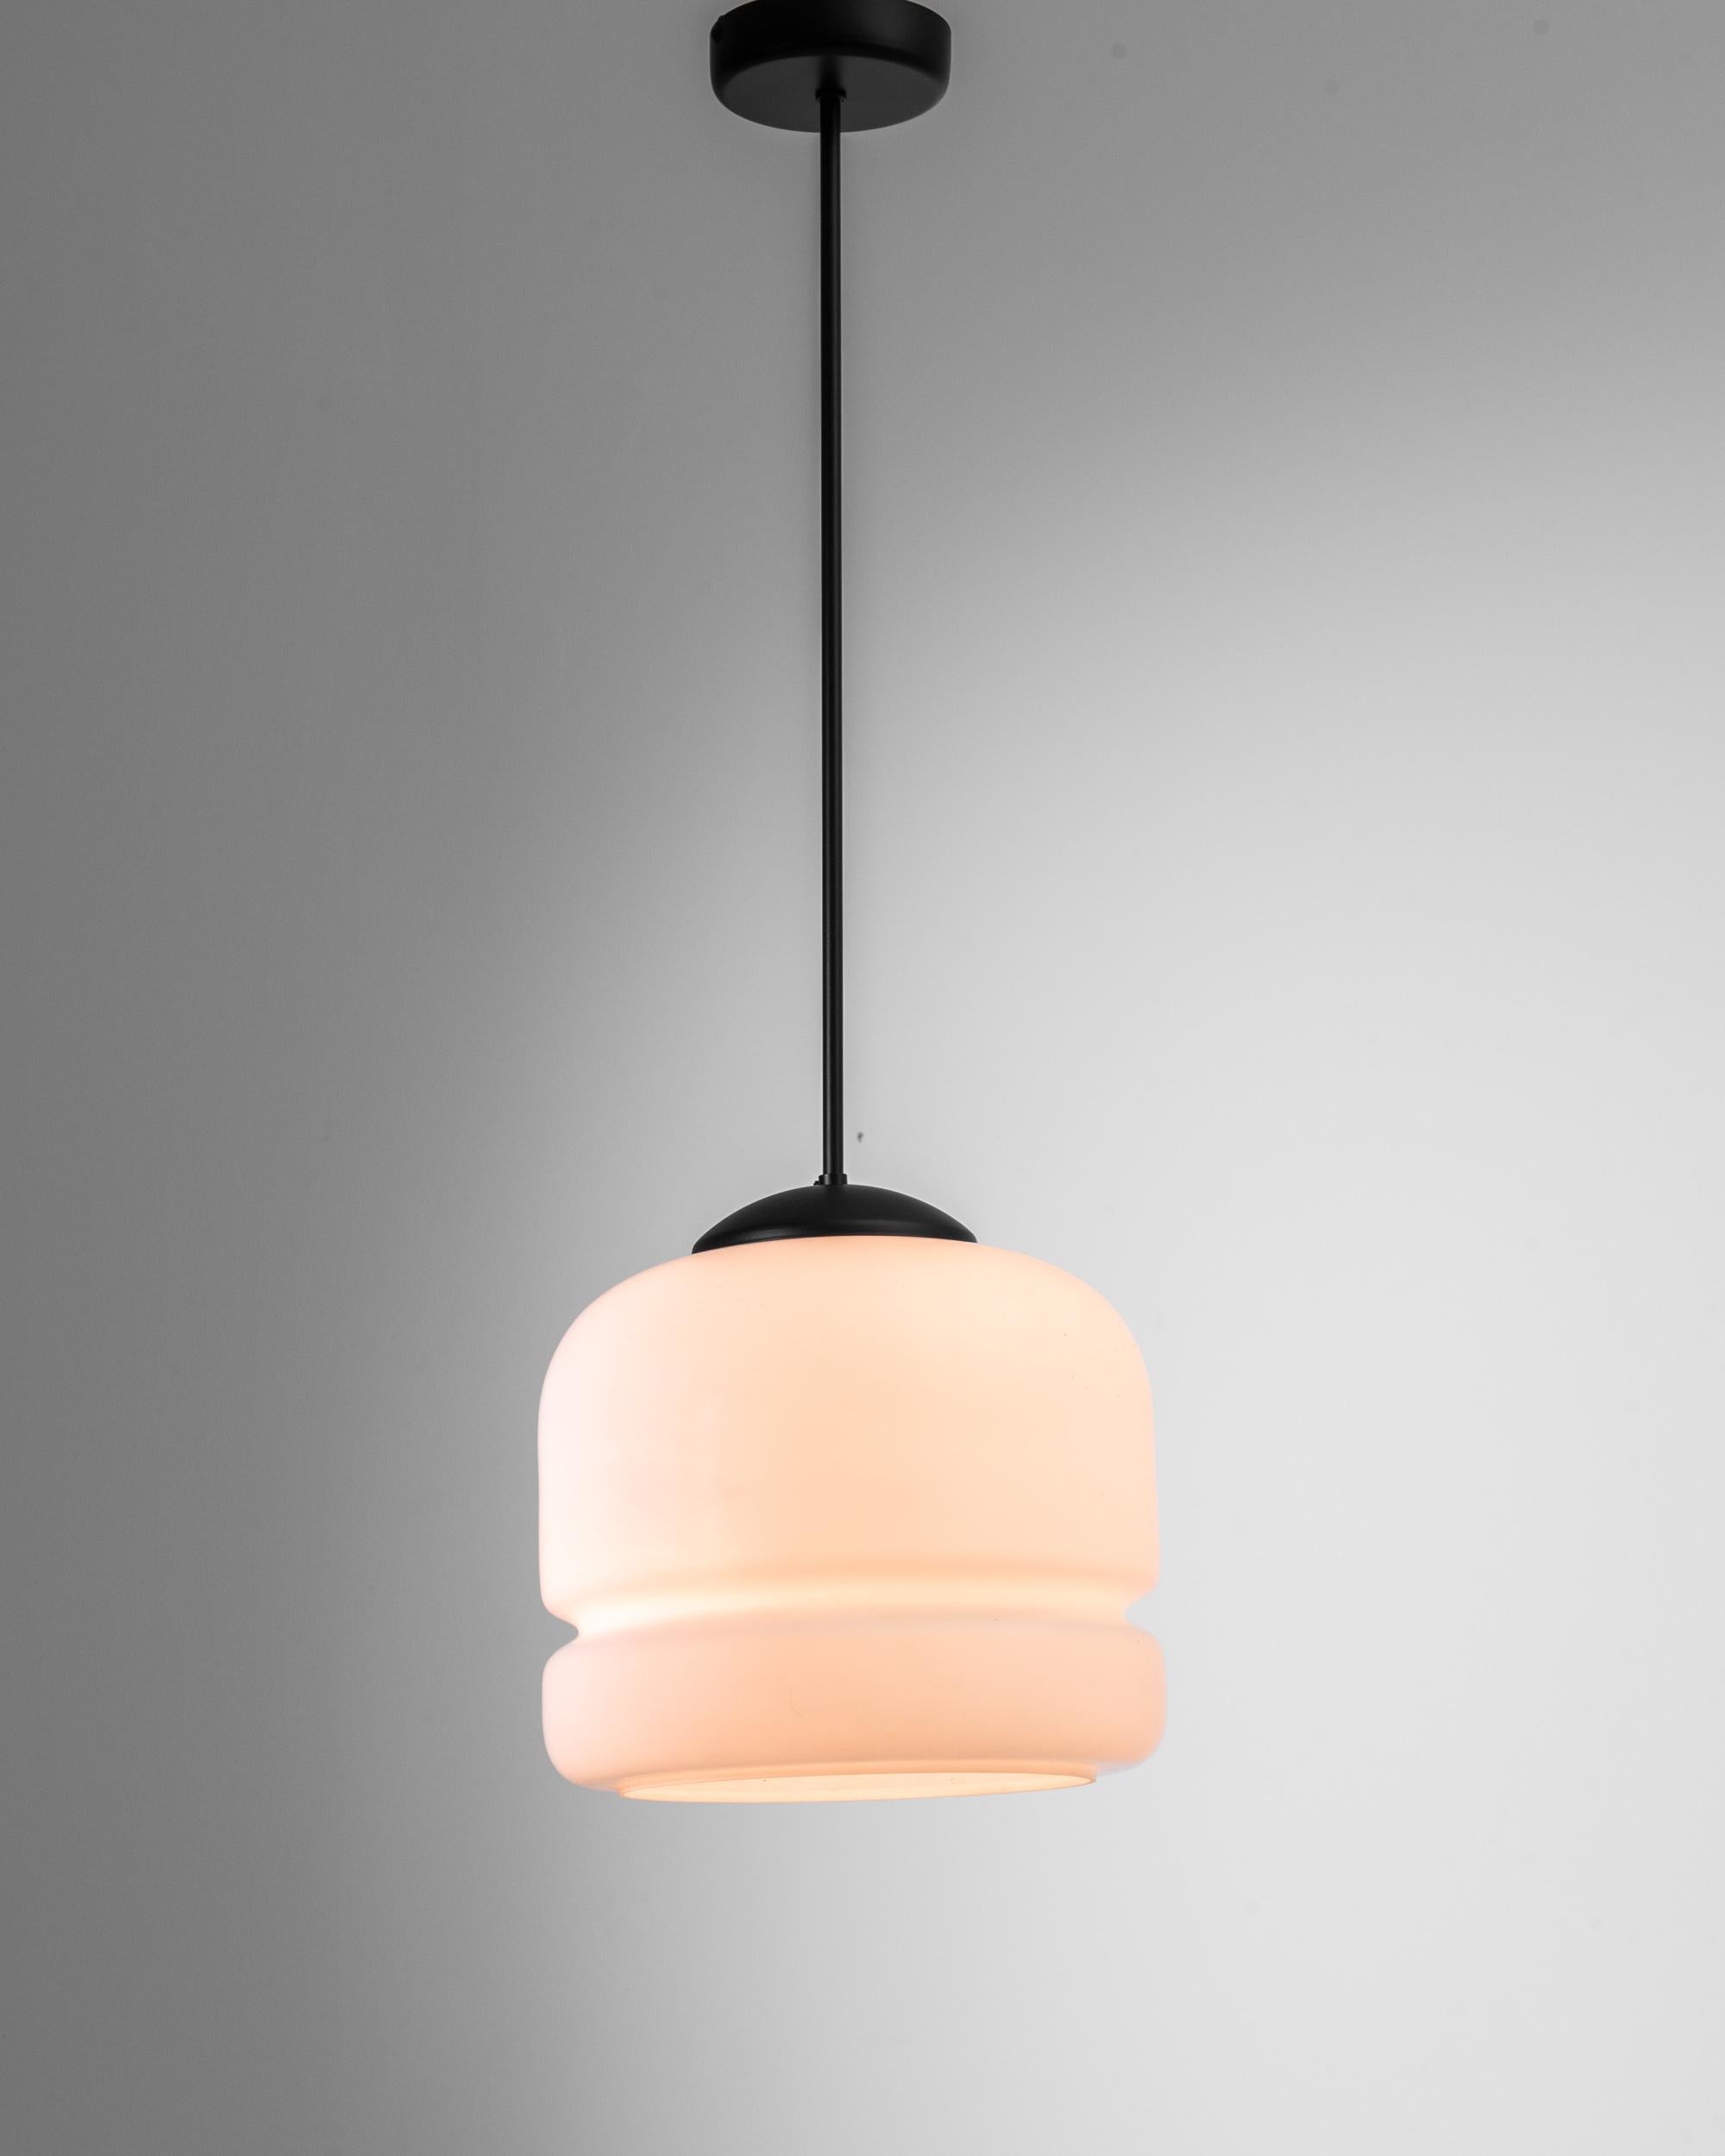 Lampe suspendue en verre et en métal, produite en Tchécoslovaquie au cours du 20e siècle. Descendant du plafond sur une tige de trois pieds, cette charmante lampe, avec son bulbe de verre opale aux courbes organiques, est constamment contemporaine.